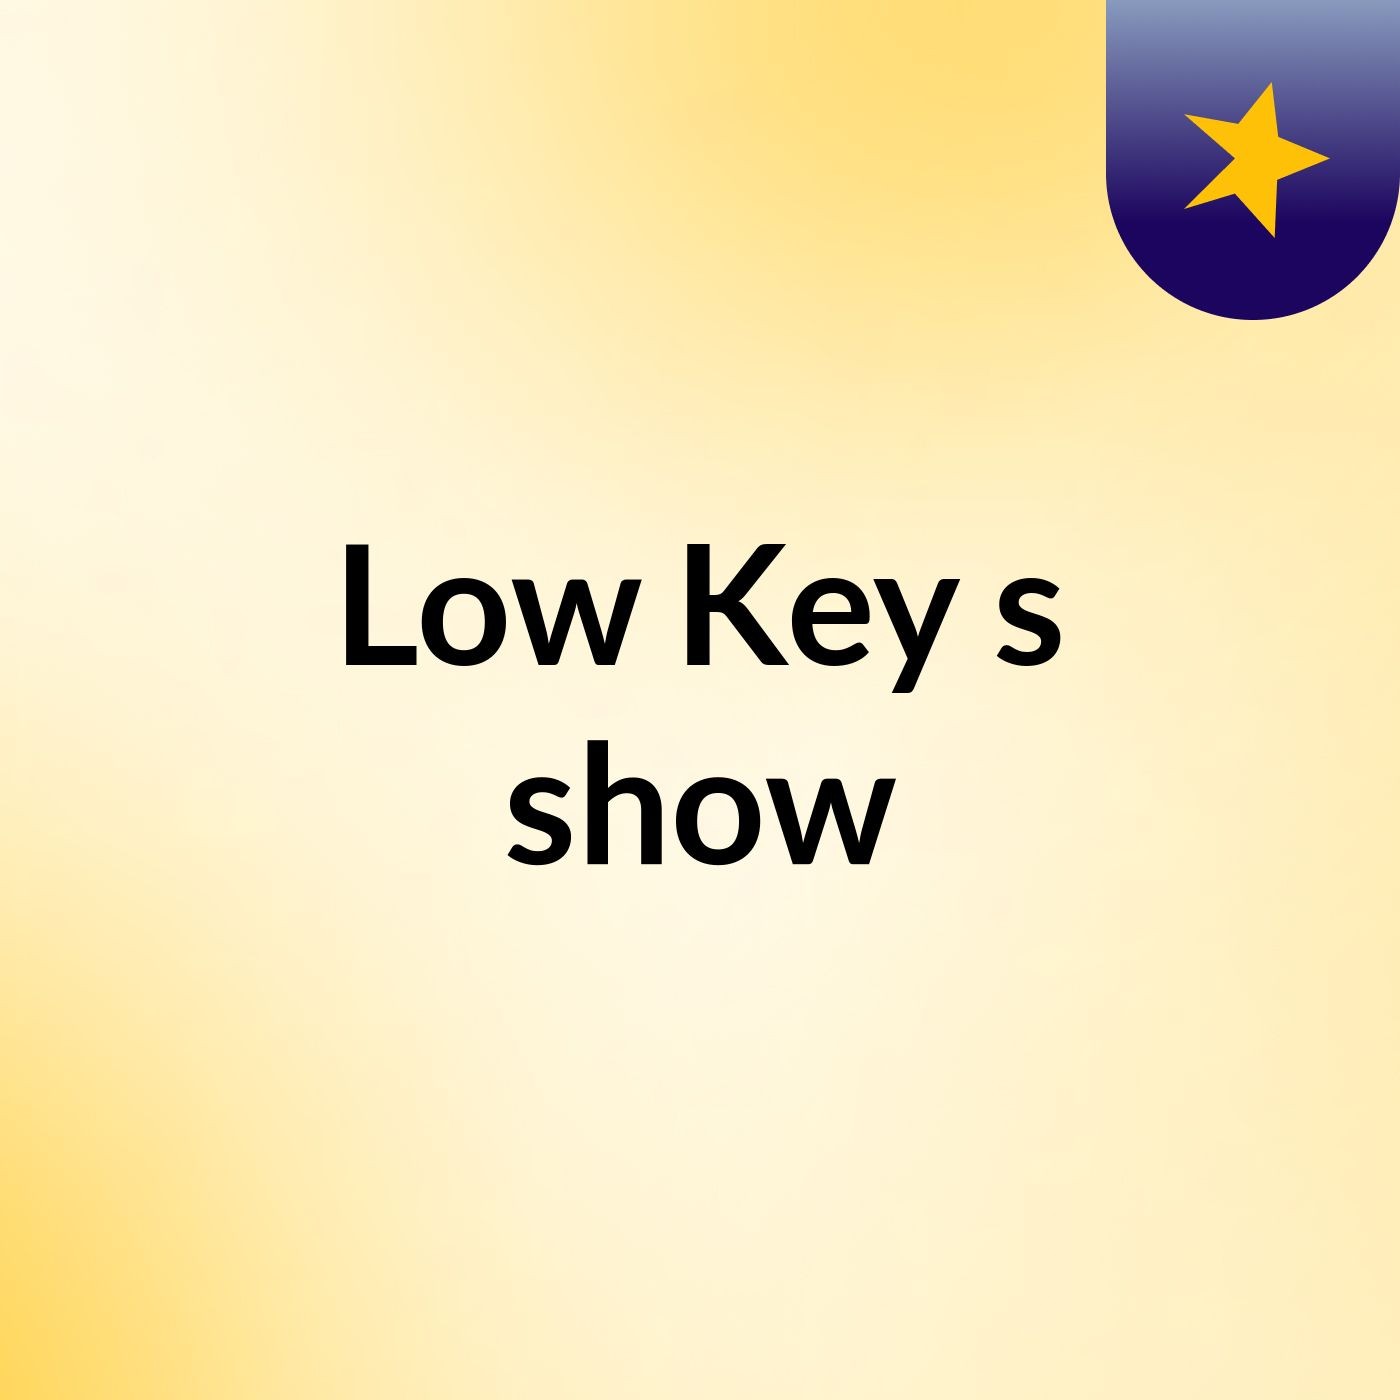 Low Key's show